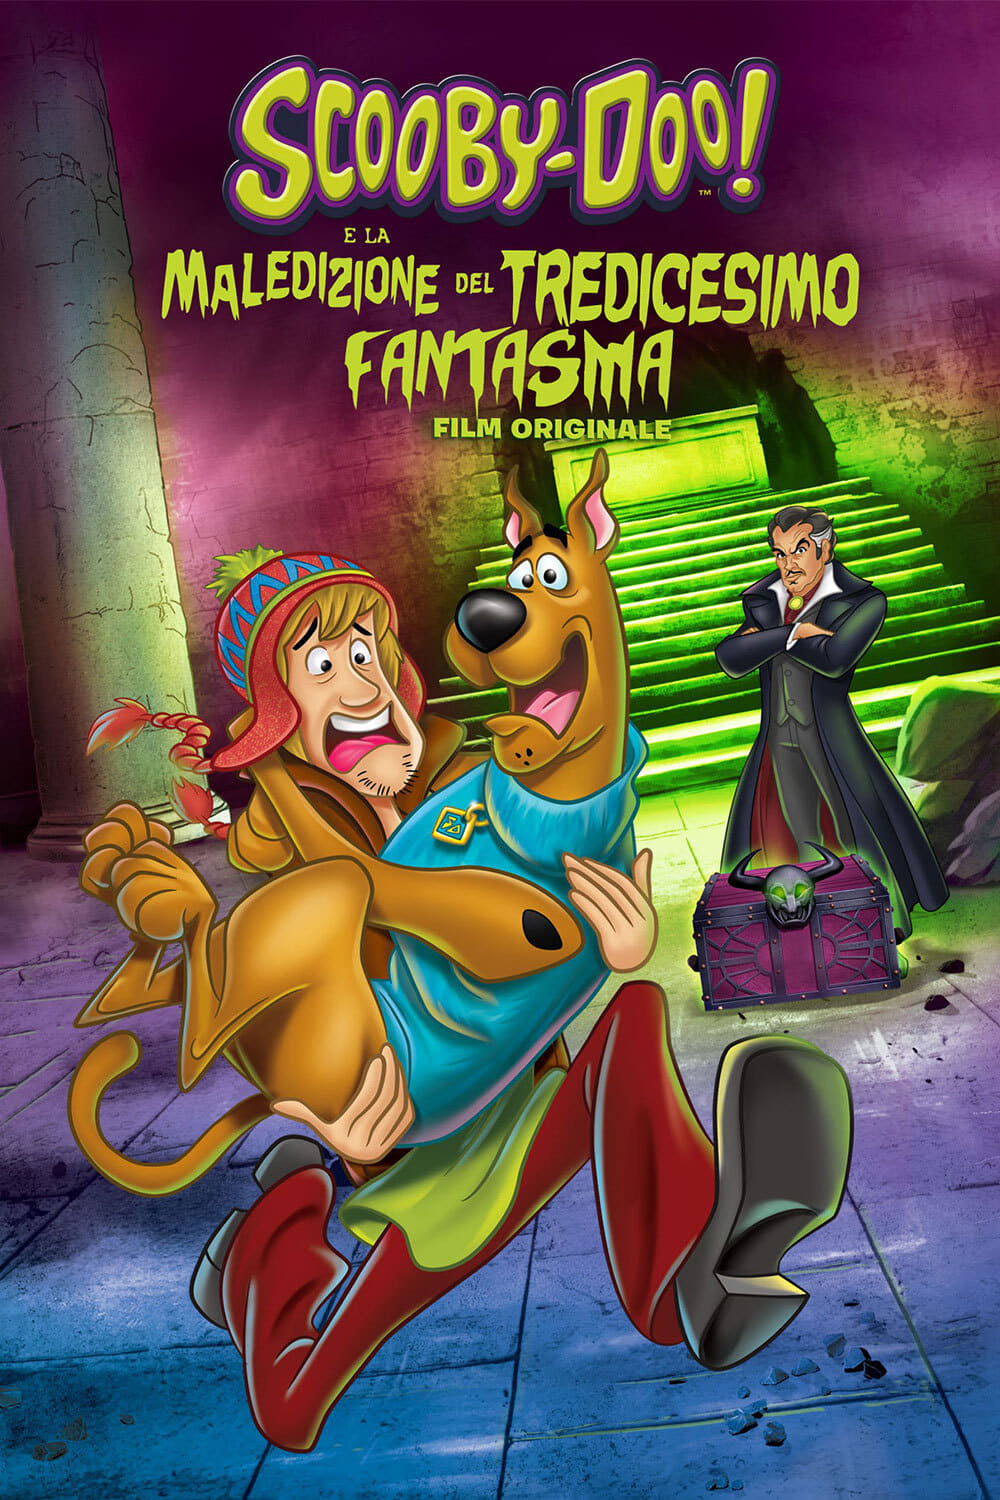 Scooby-Doo! e la maledizione del tredicesimo fantasma film